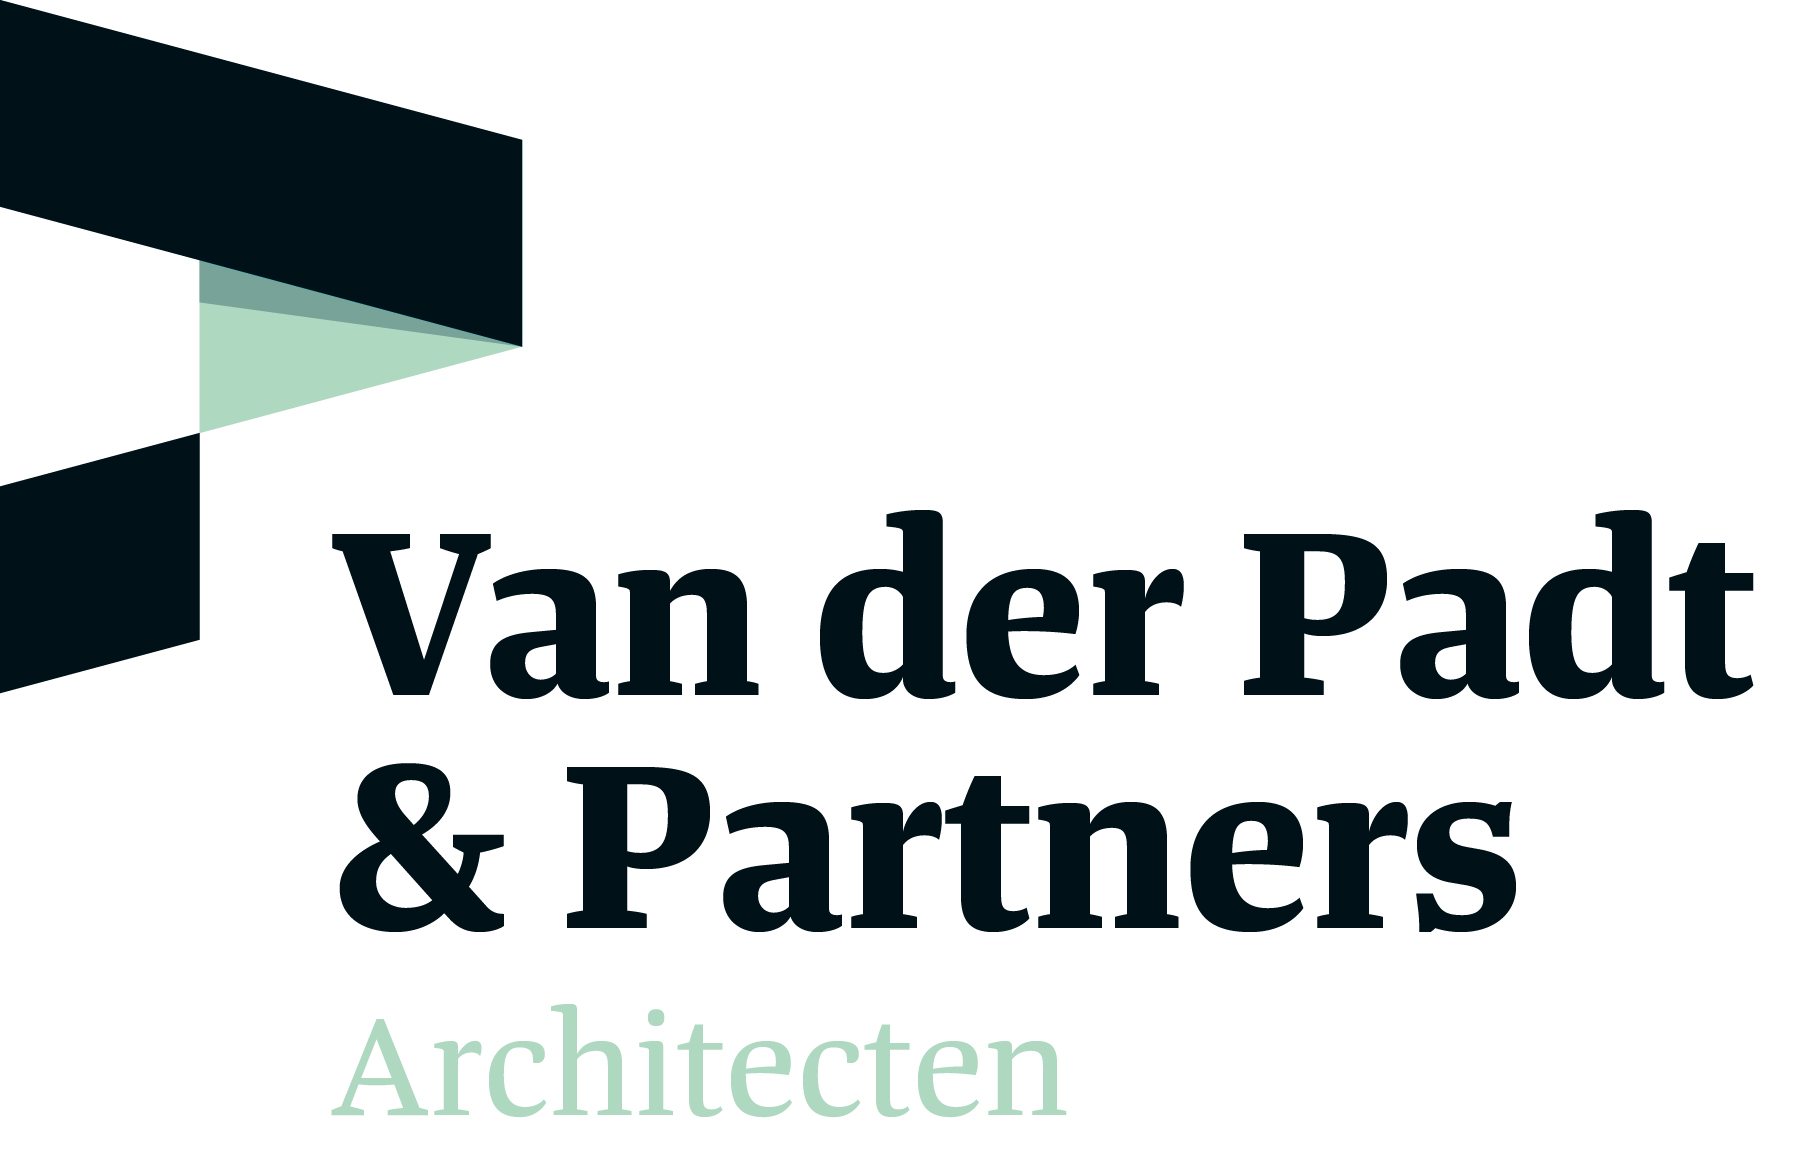 Van der Padt & Partners